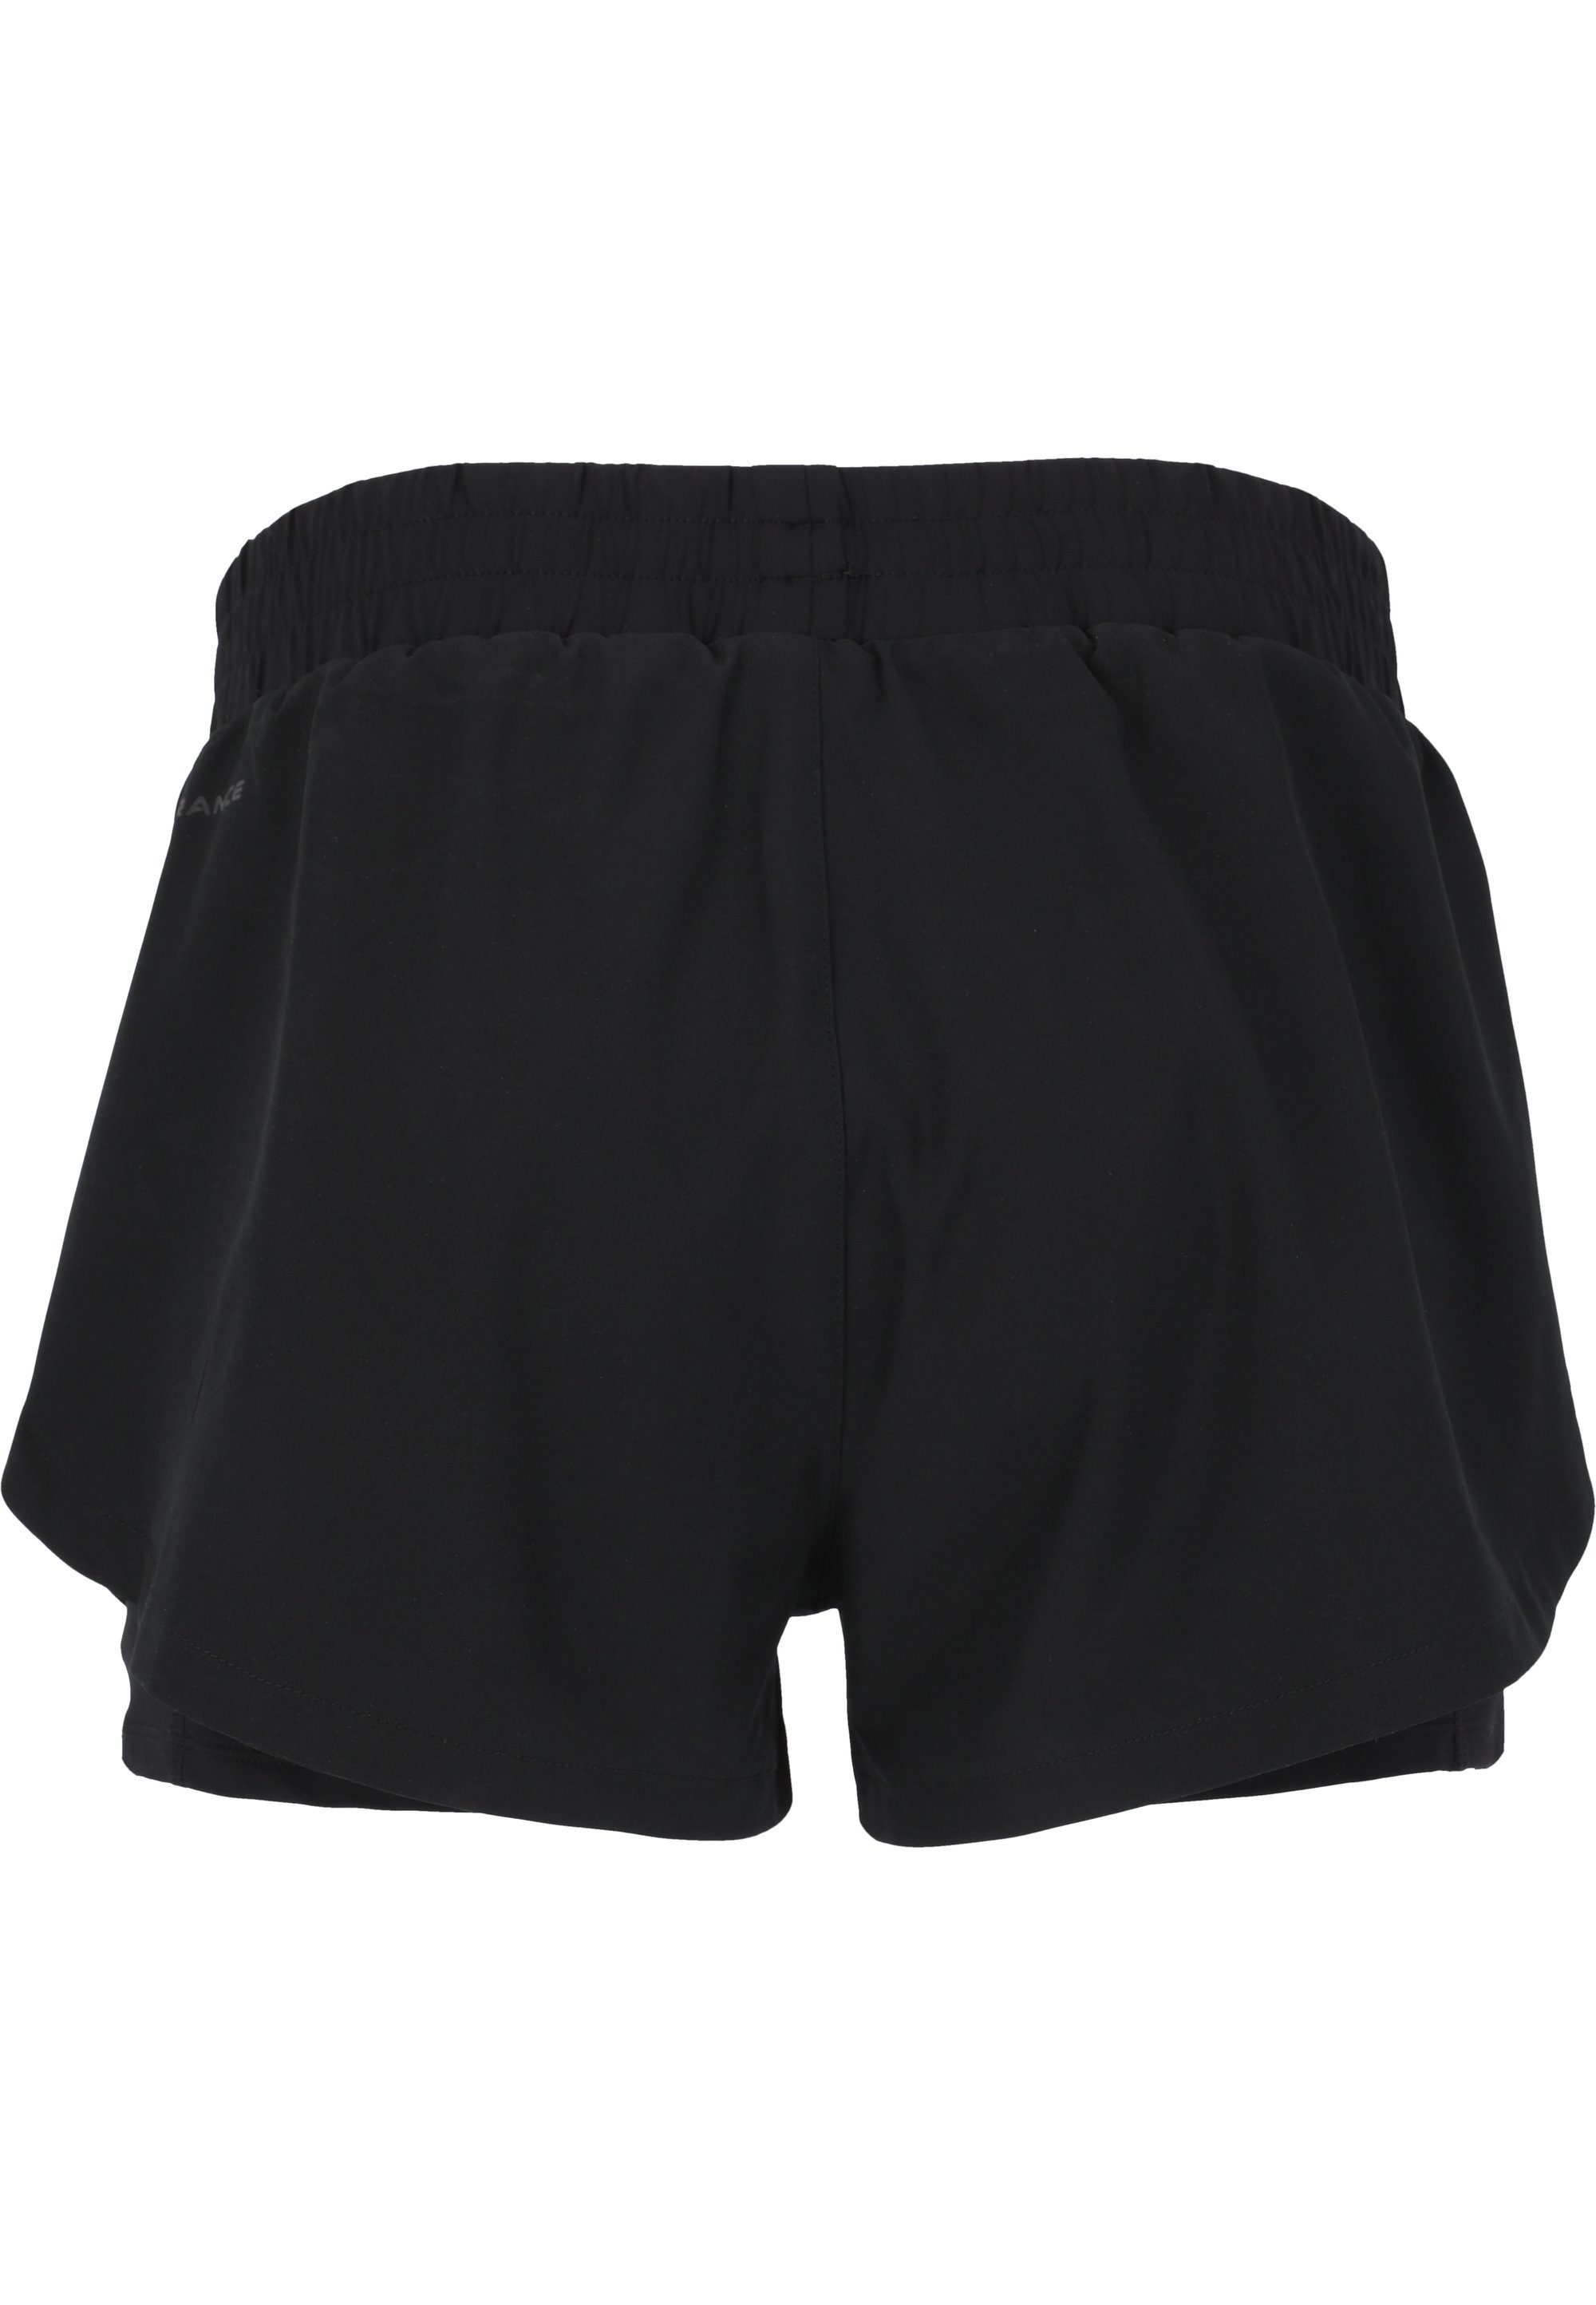 ENDURANCE Yarol mit praktischer schwarz Shorts 2-in-1-Funktion